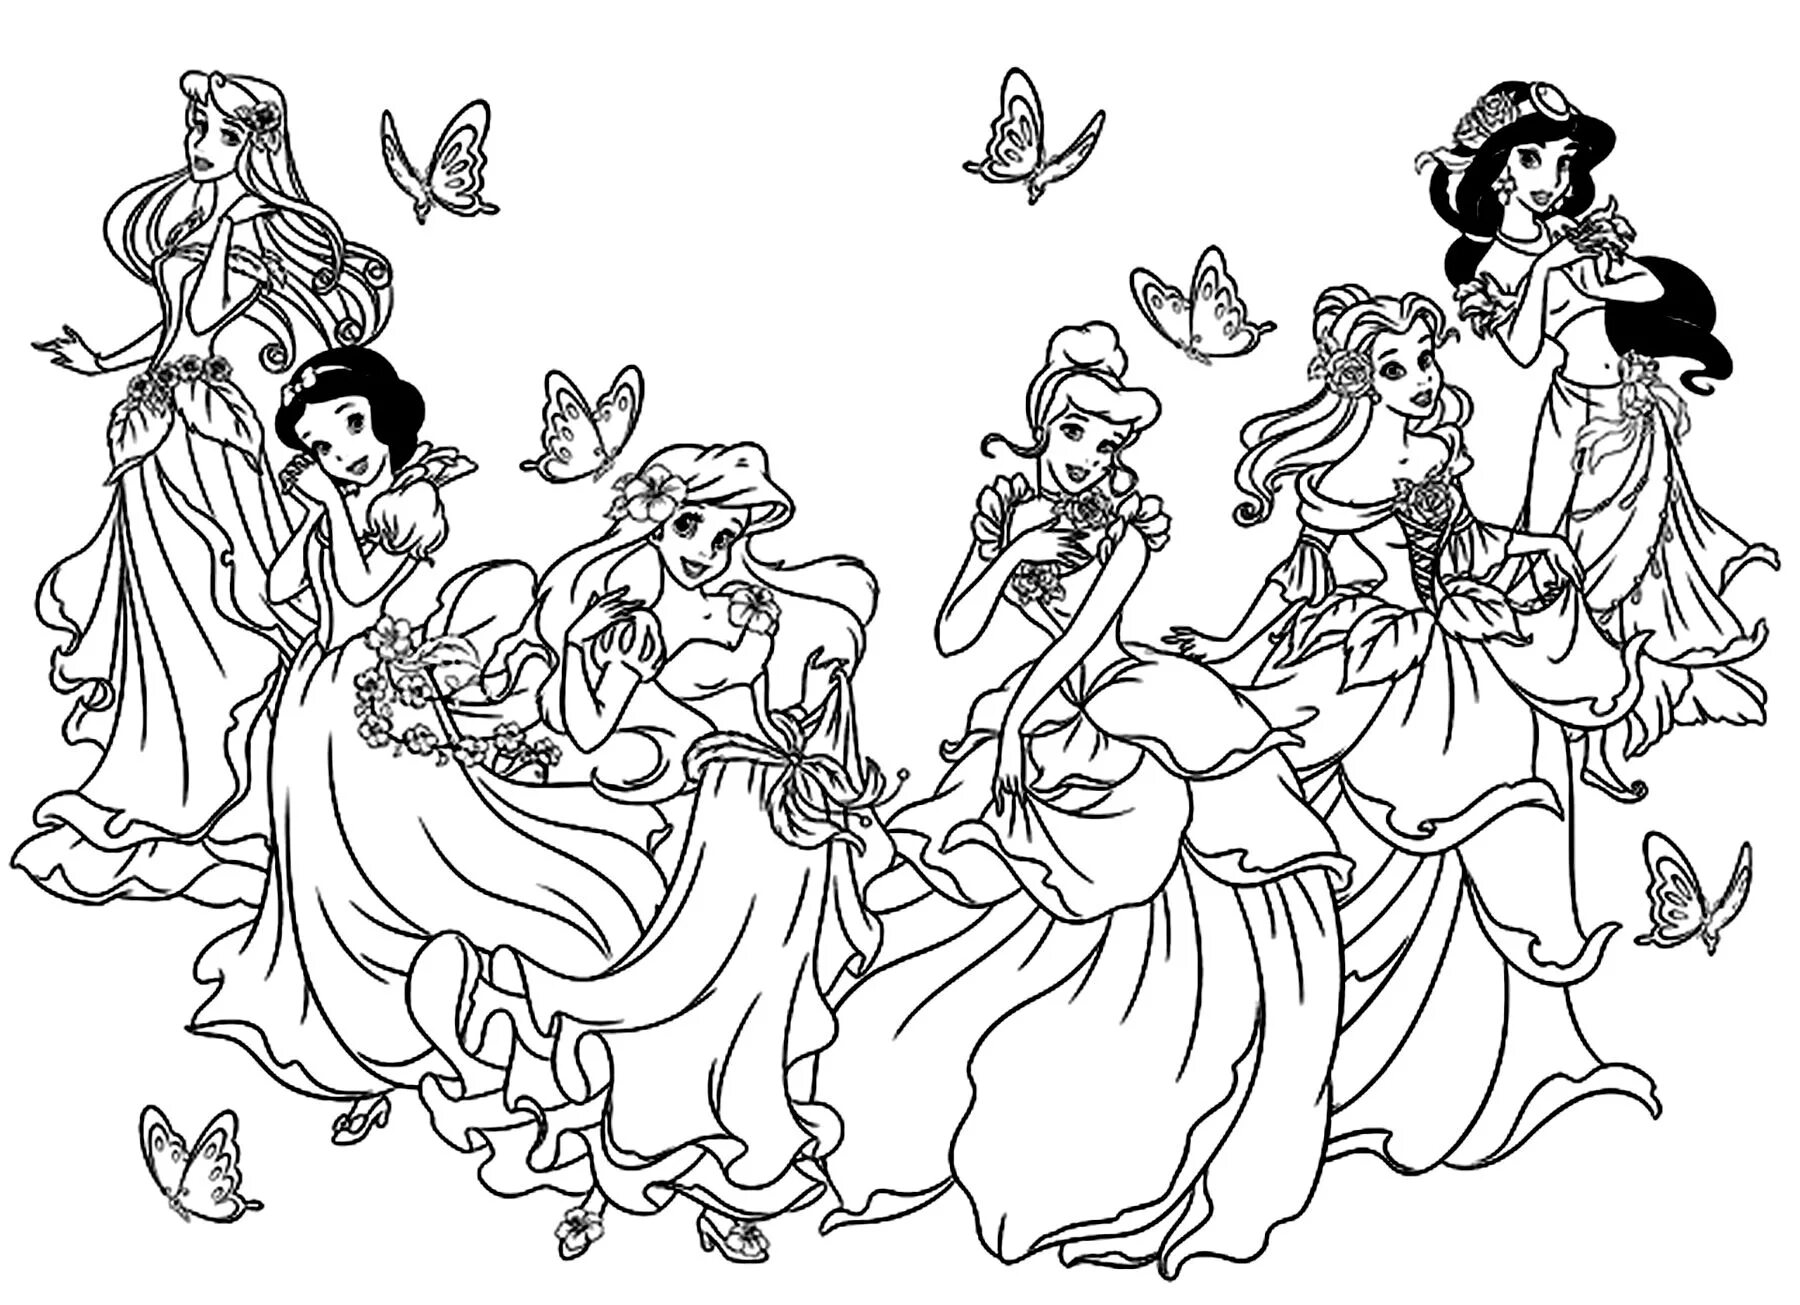 Cartoon princesses #1